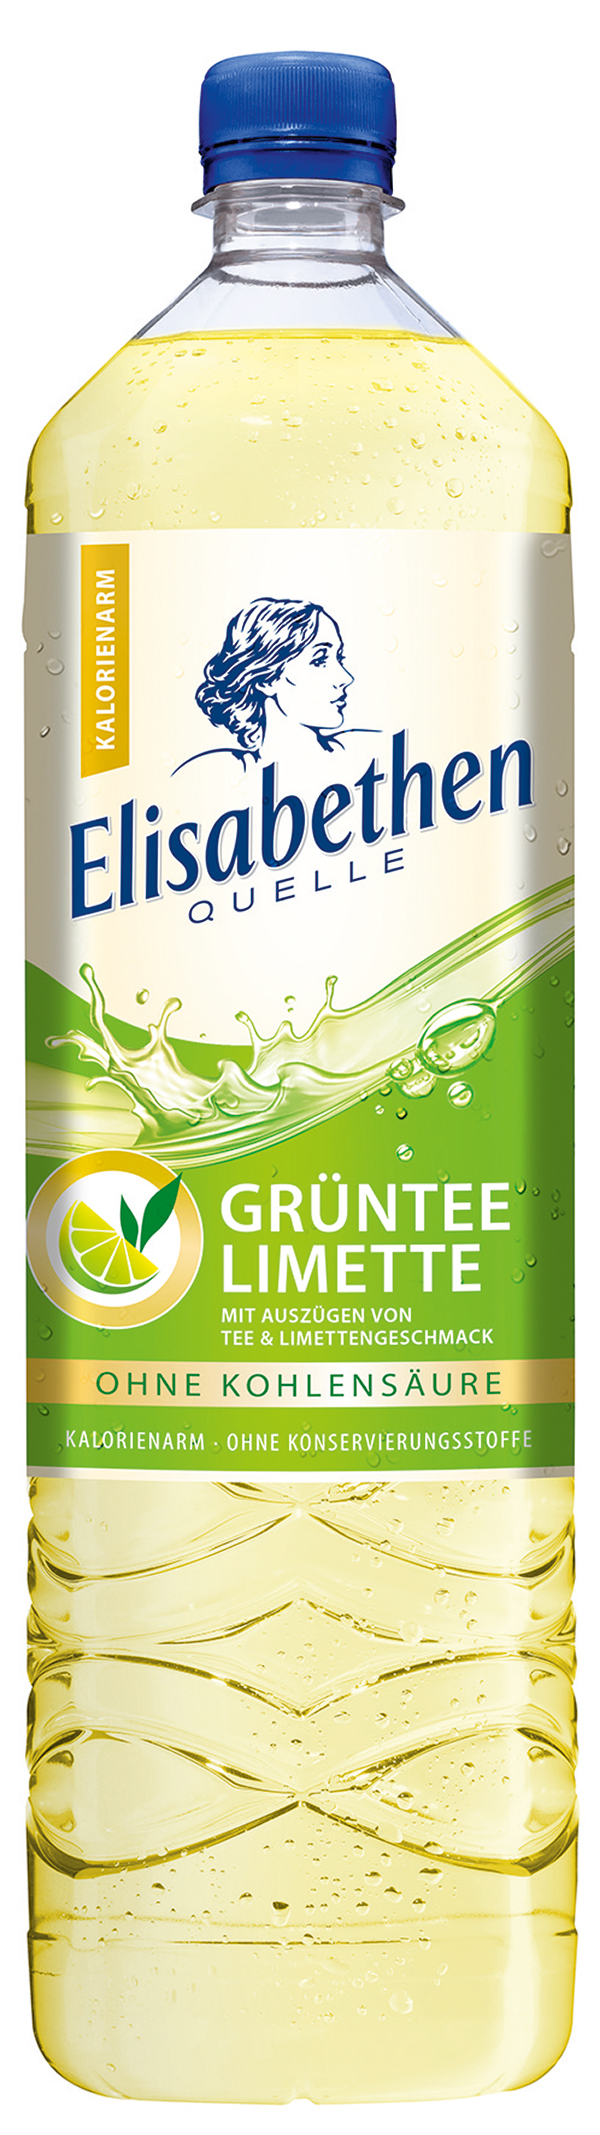 Elisabethen Quelle Grüntee Limette  6 x 1,5 l (PET)